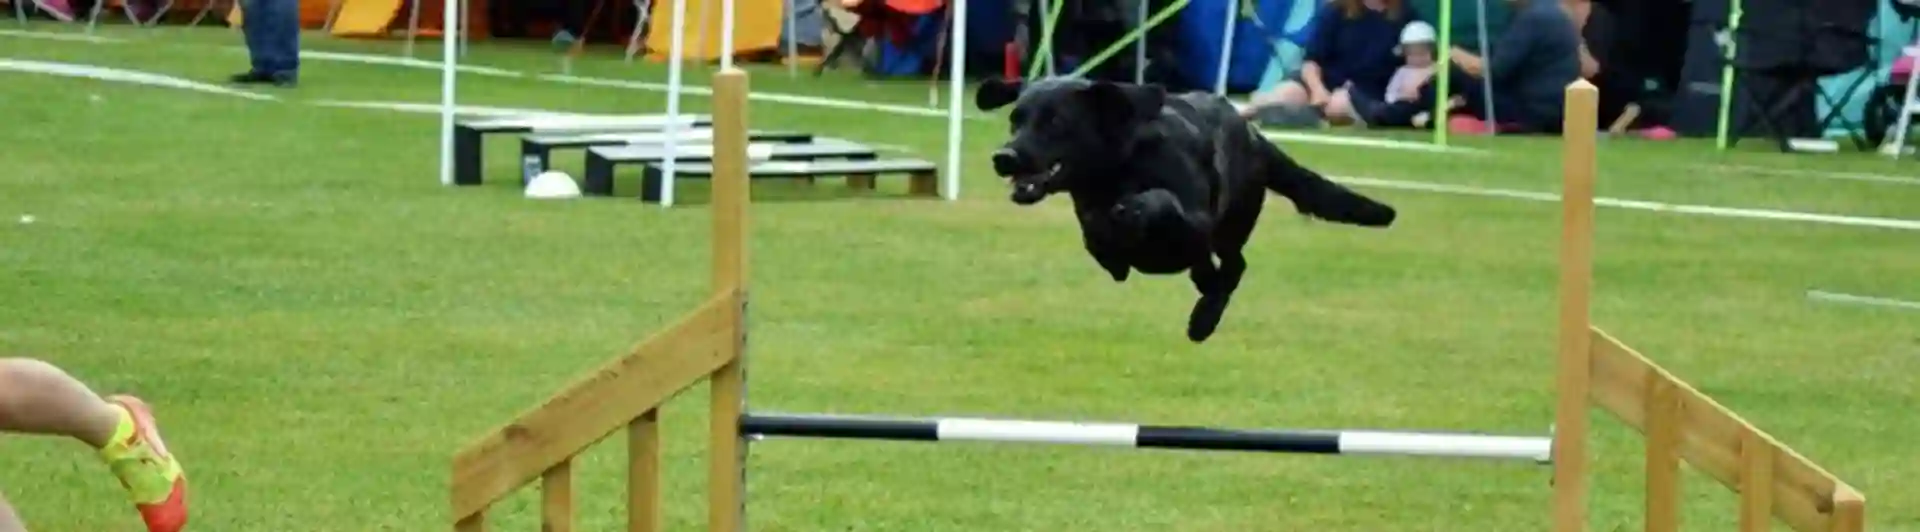 Jakt labrador hoppar över ett hinder på en agilitytävling.